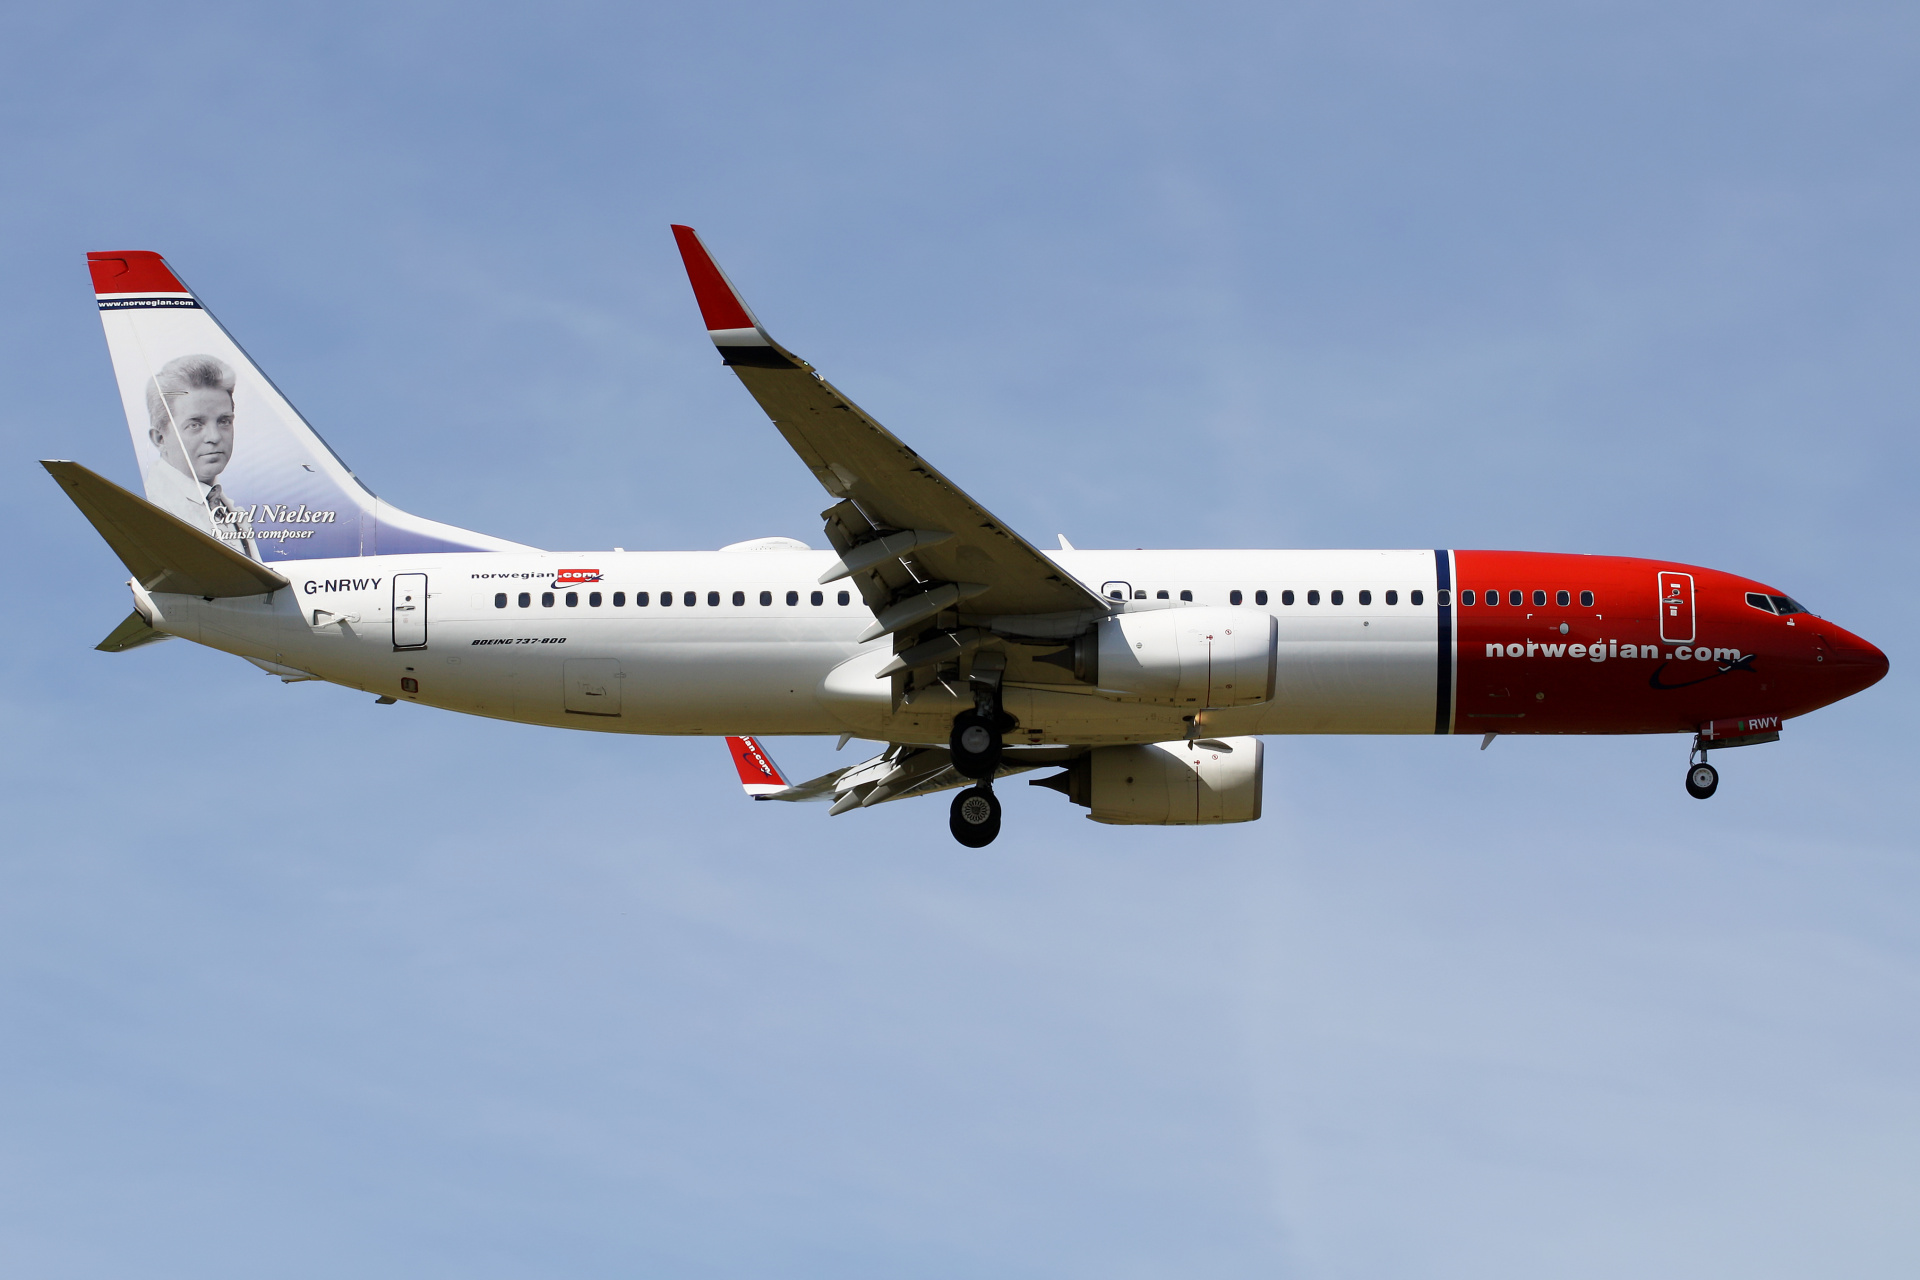 G-NRWY, Norwegian Air UK (Aircraft » EPWA Spotting » Boeing 737-800 » Norwegian Air)